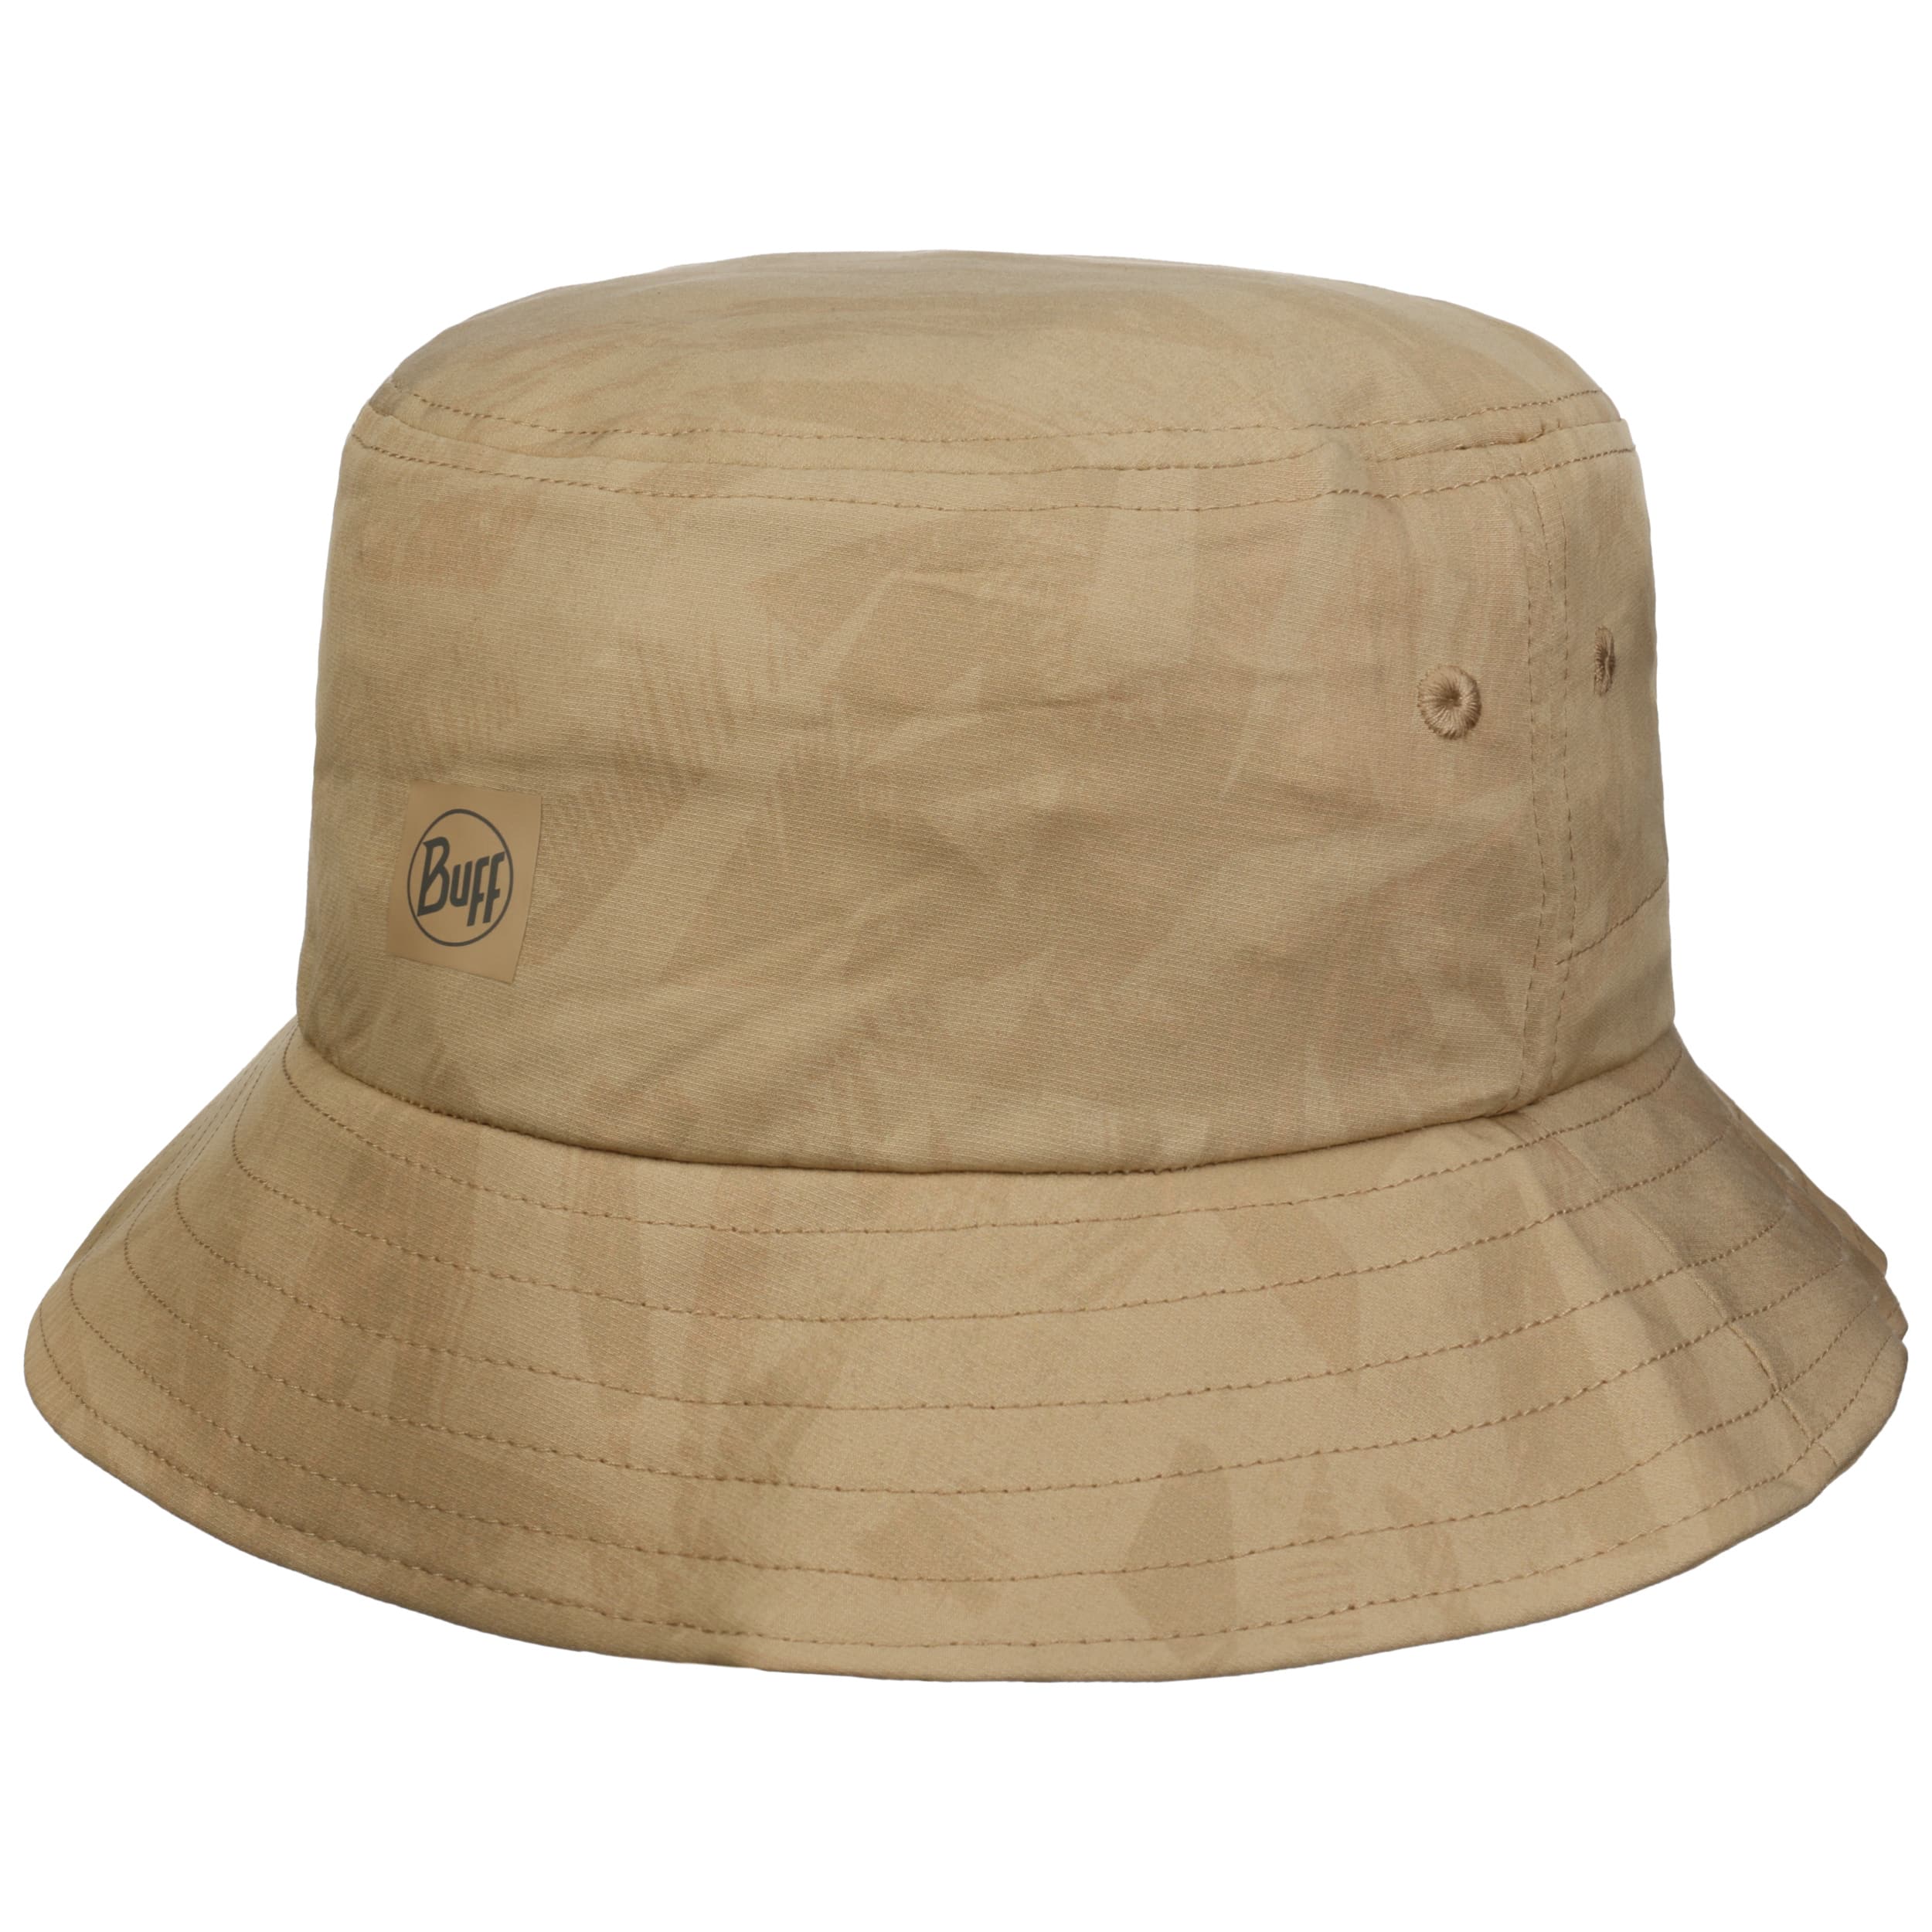 Acai Adventure Bucket Cloth Hat by BUFF